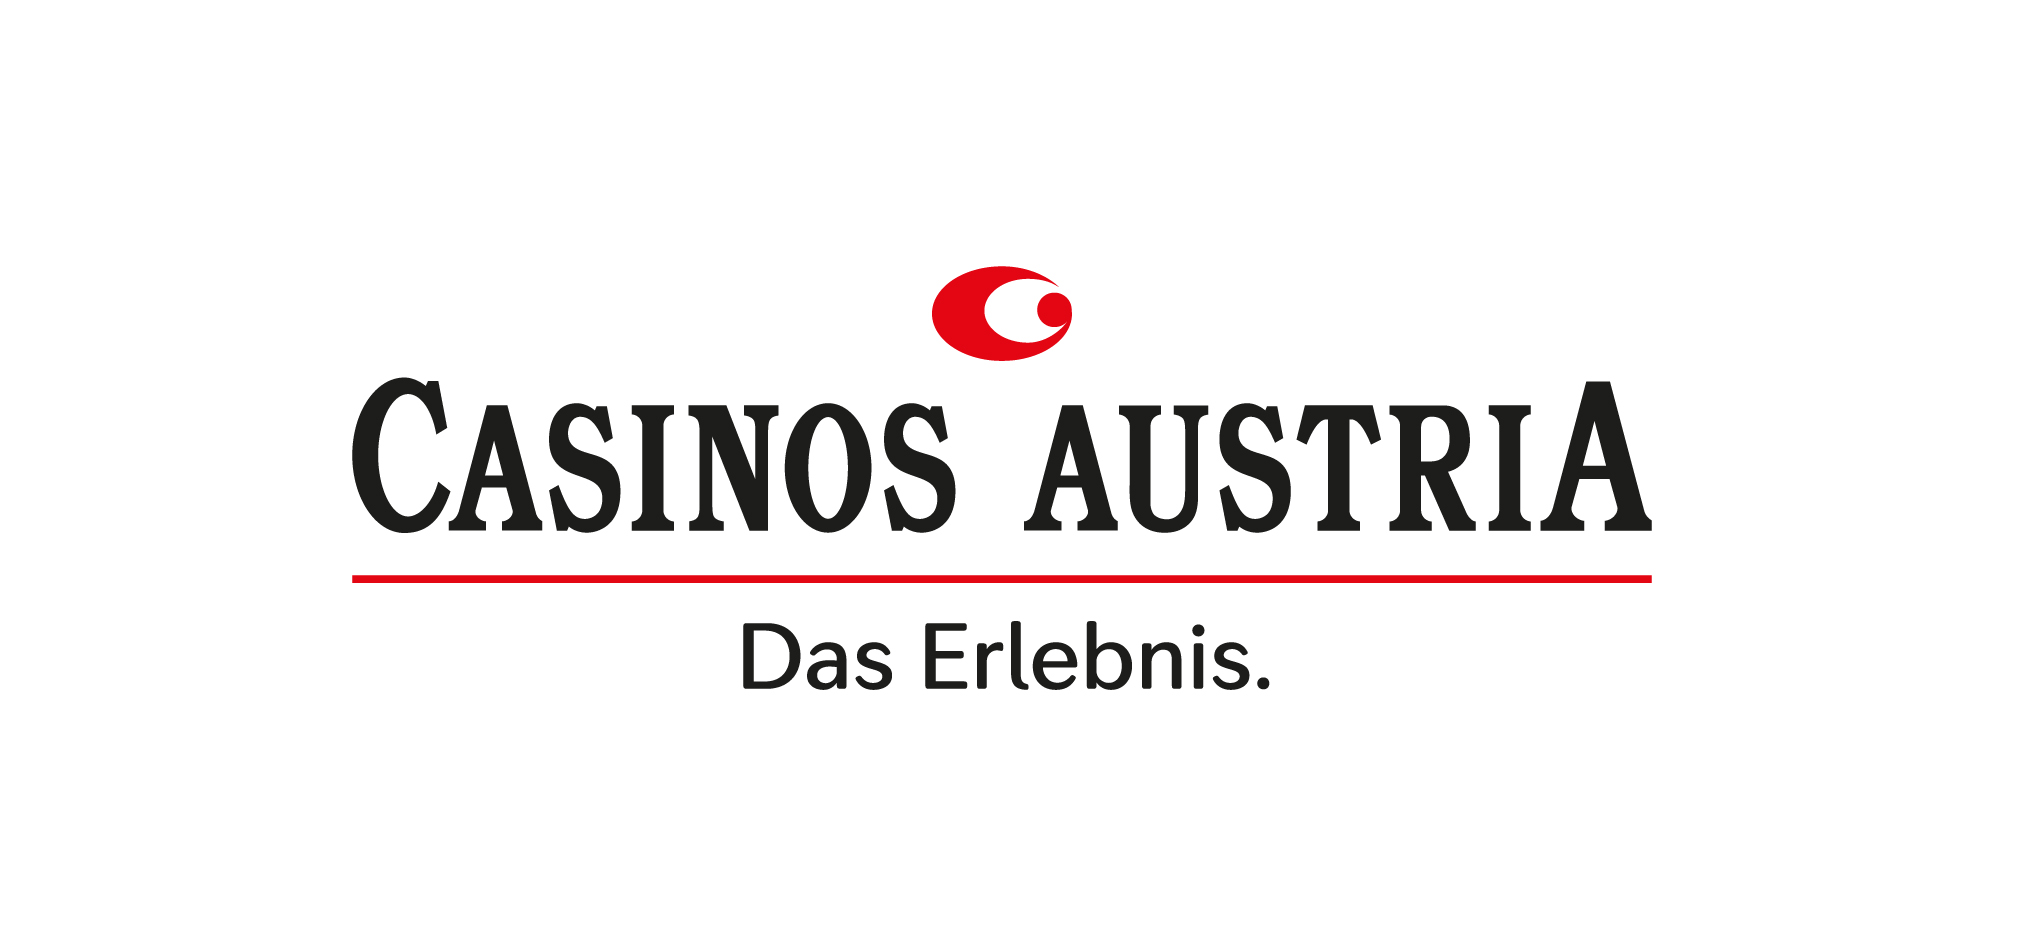 Casinos Austria